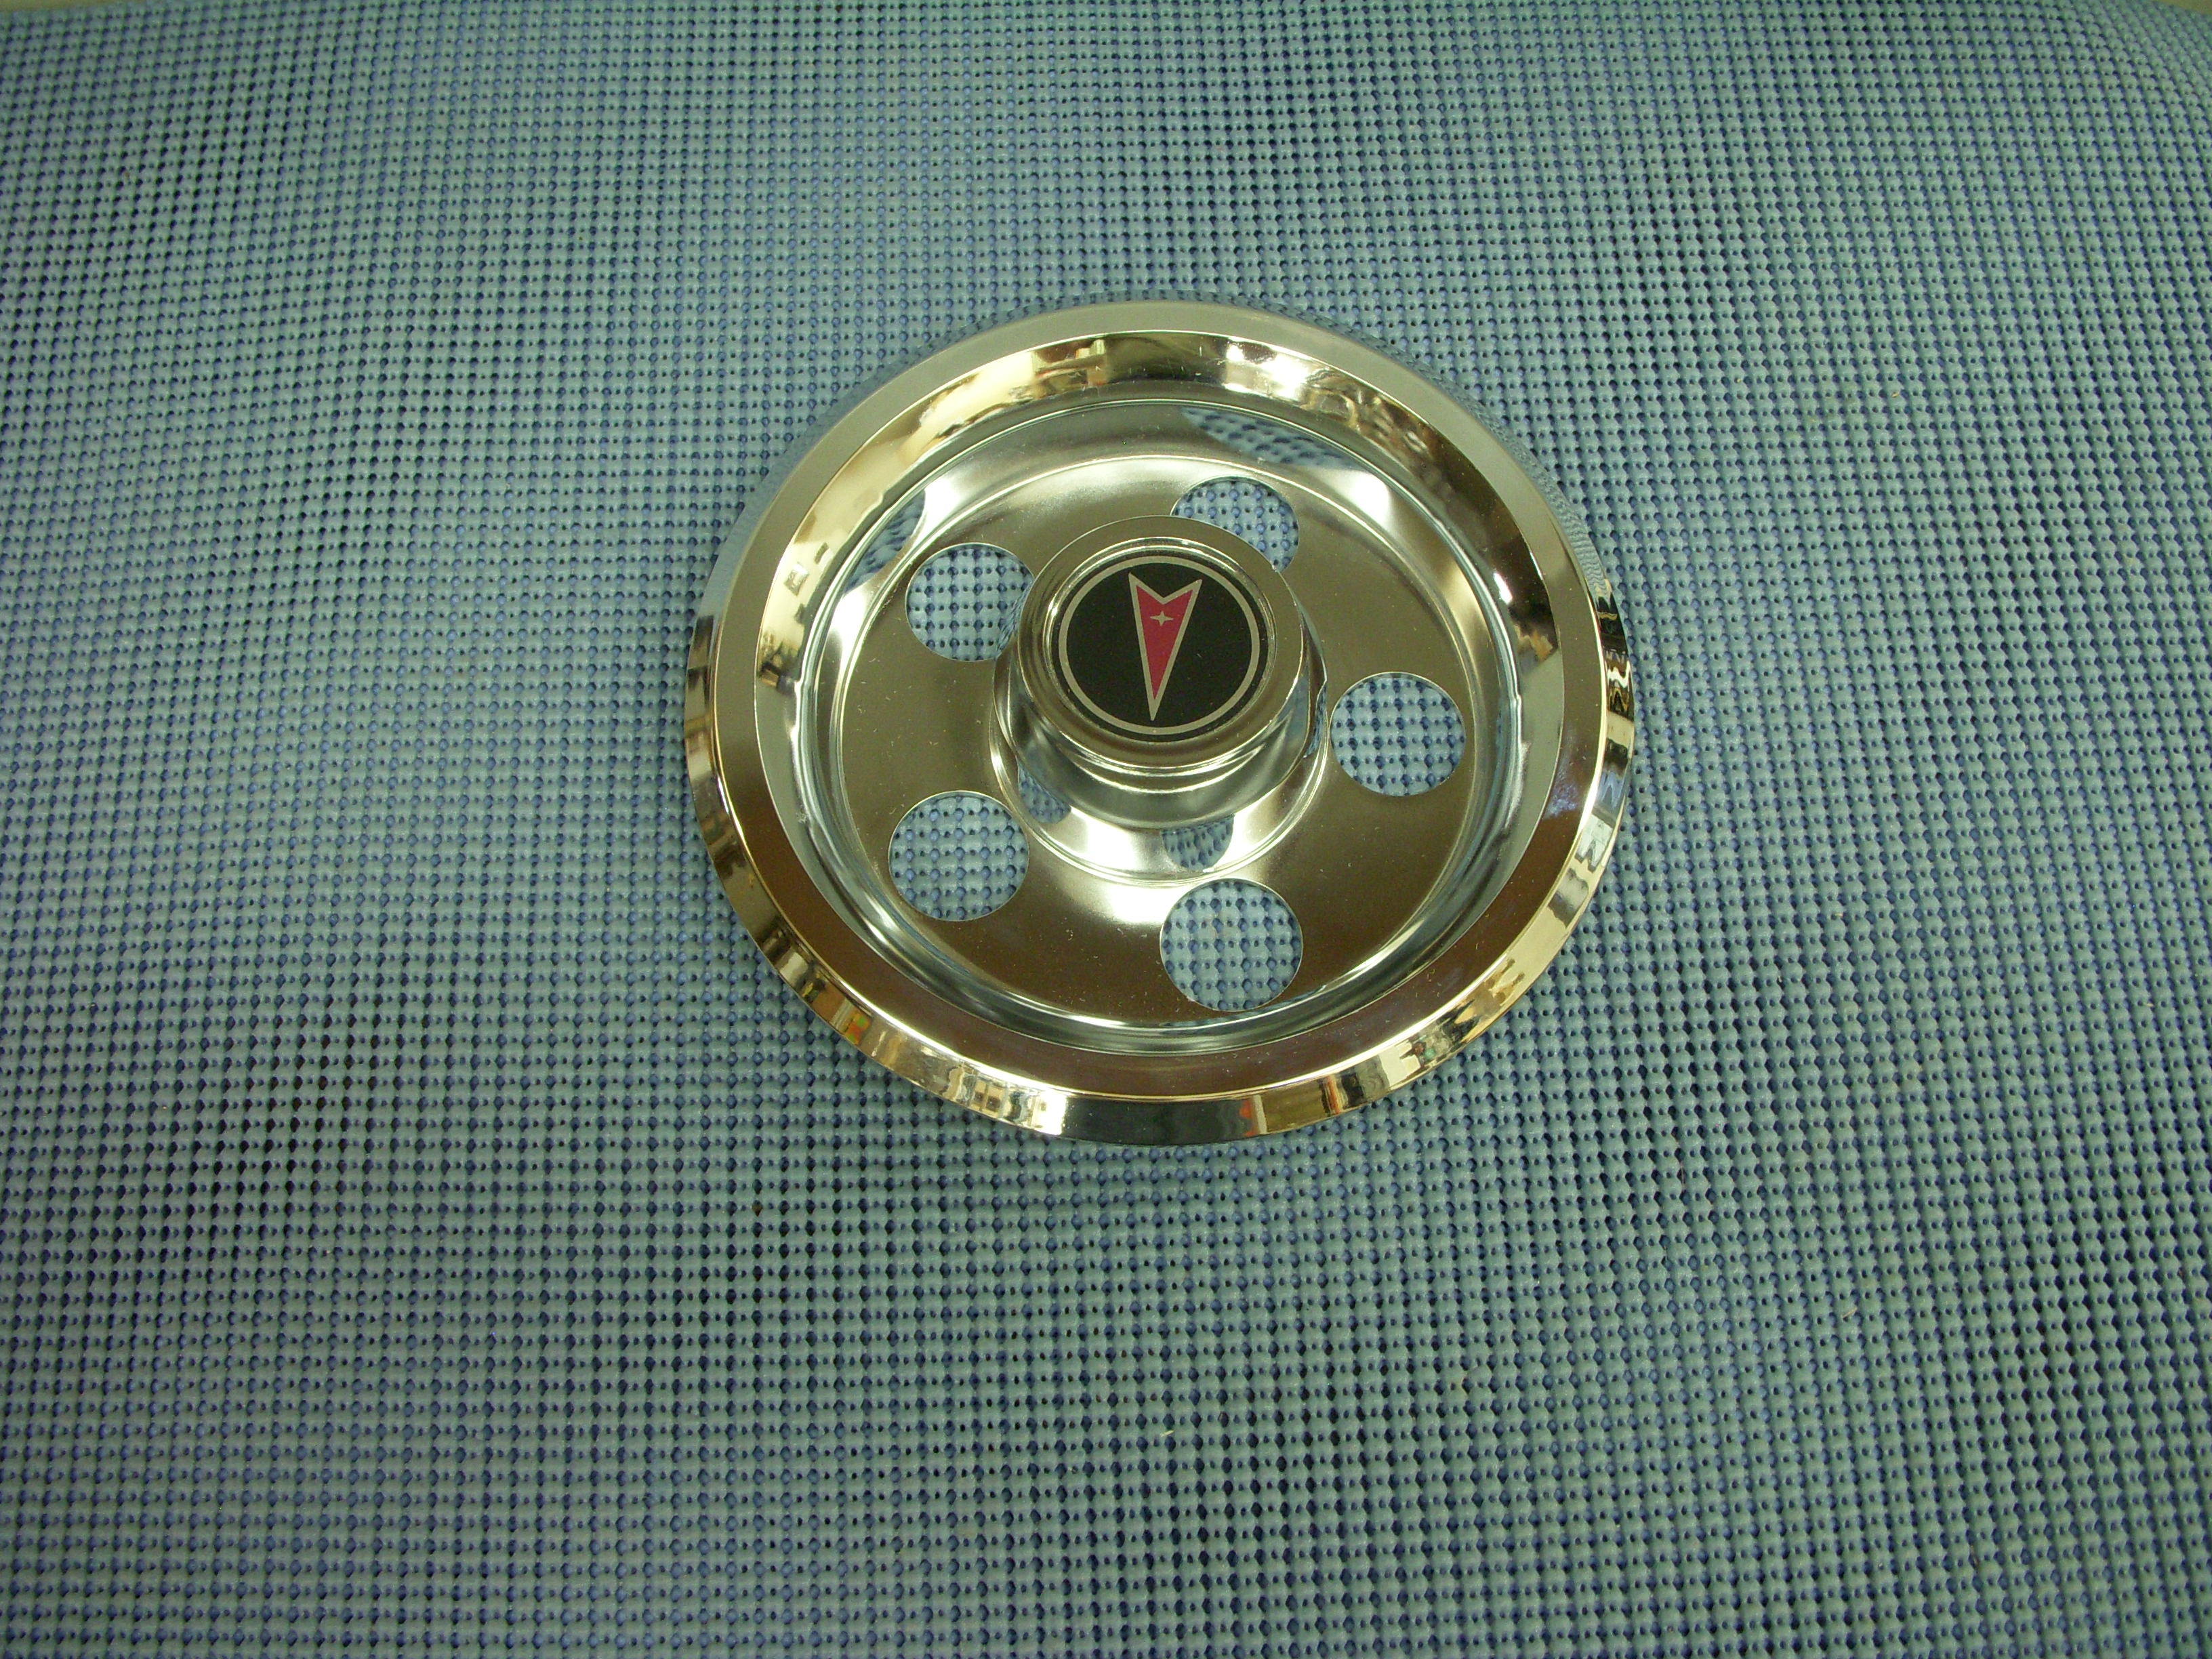 1982 Pontiac Wheel Center Cap NOS # 475187